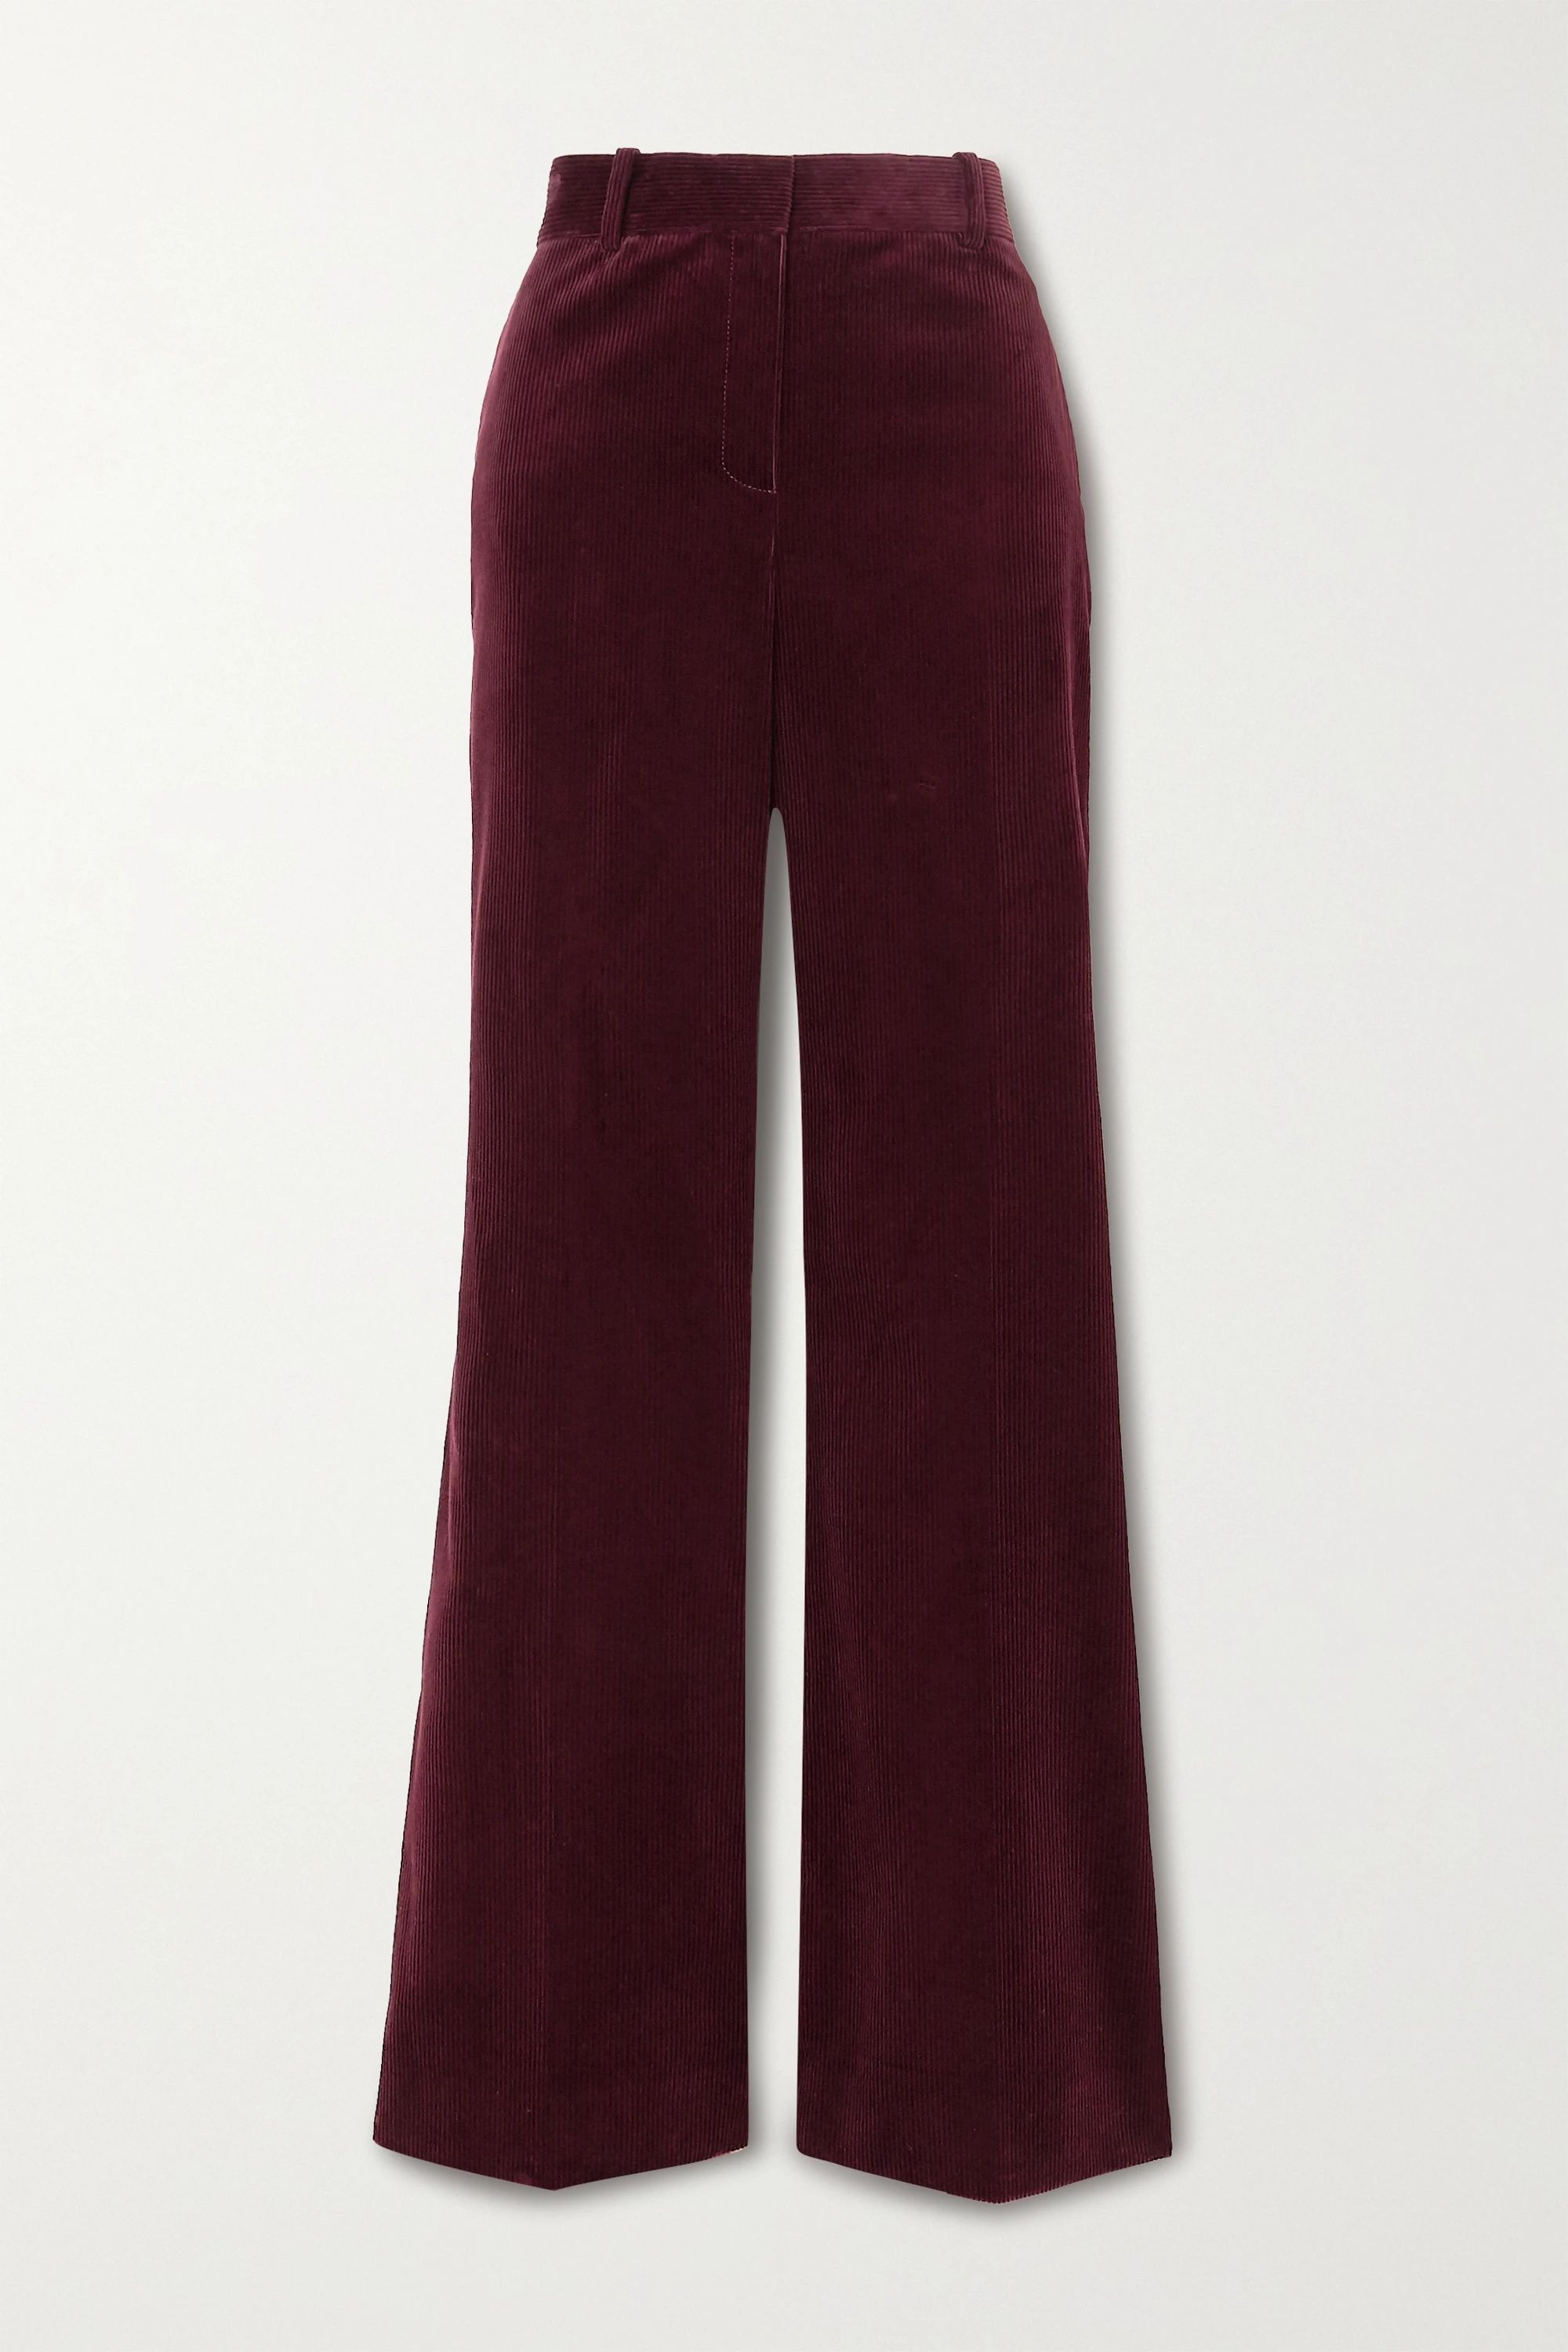 Burgundy David cotton-corduroy wide-leg pants | Bella Freud | NET-A-PORTER | NET-A-PORTER (UK & EU)